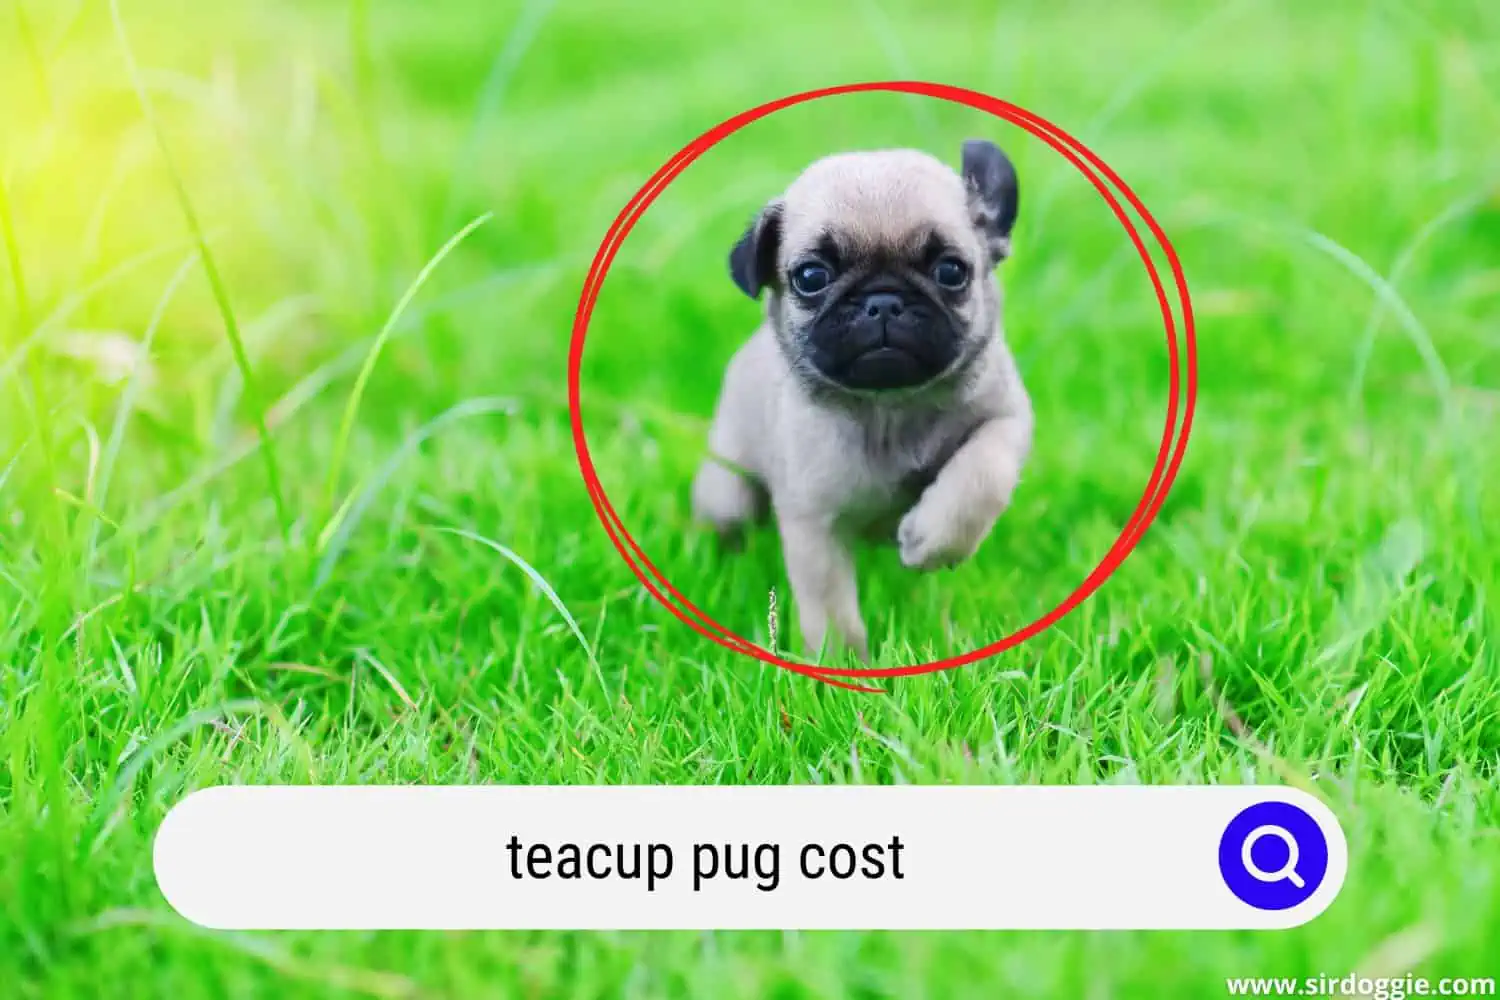 teacup pug cost